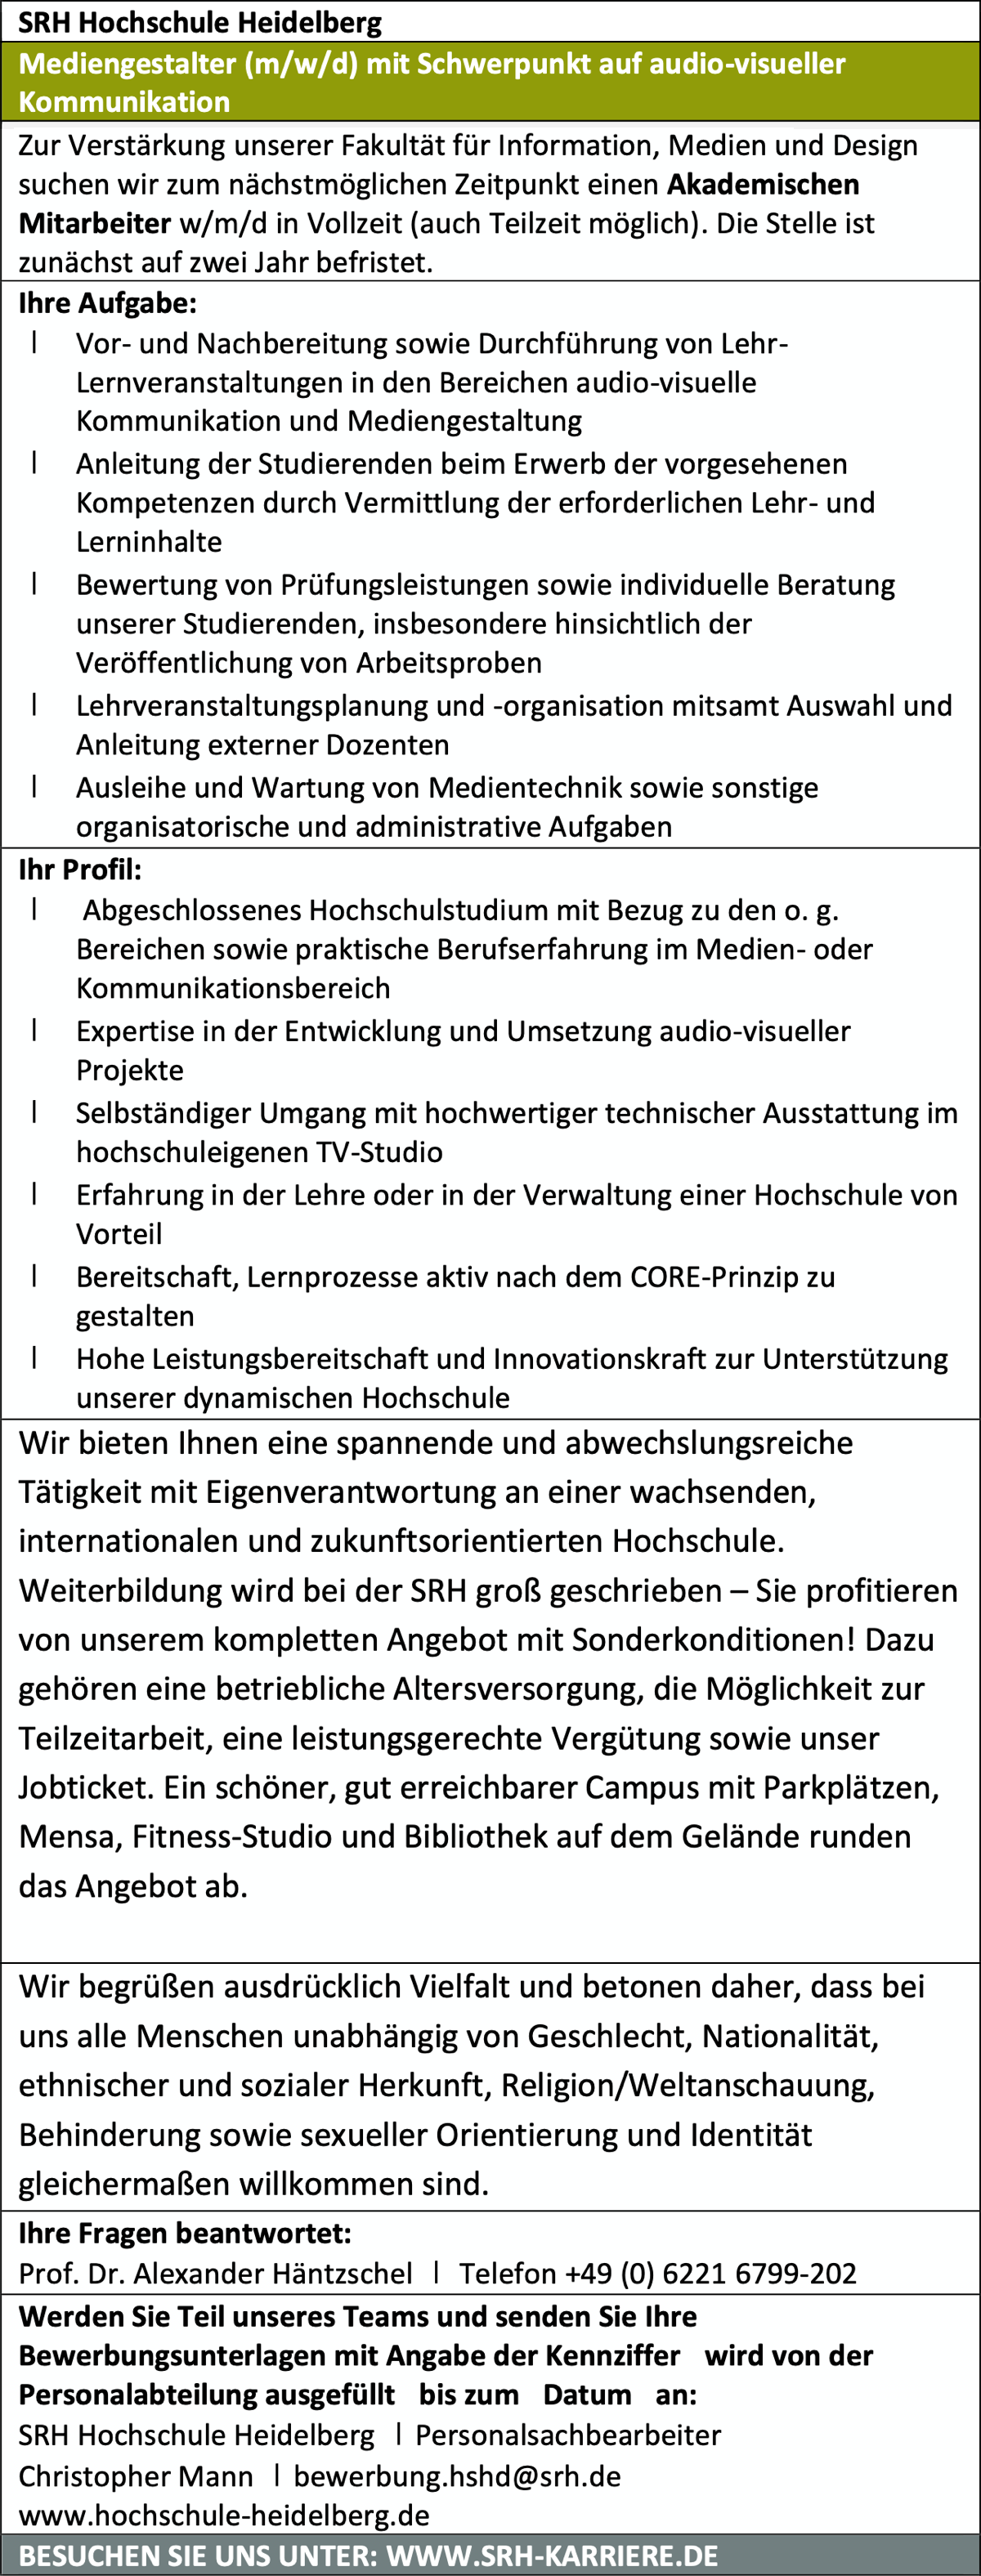 SRH Hochschule Heidelberg sucht Mediengestalter (m/w/d) für audiovisuelle Kommunikation